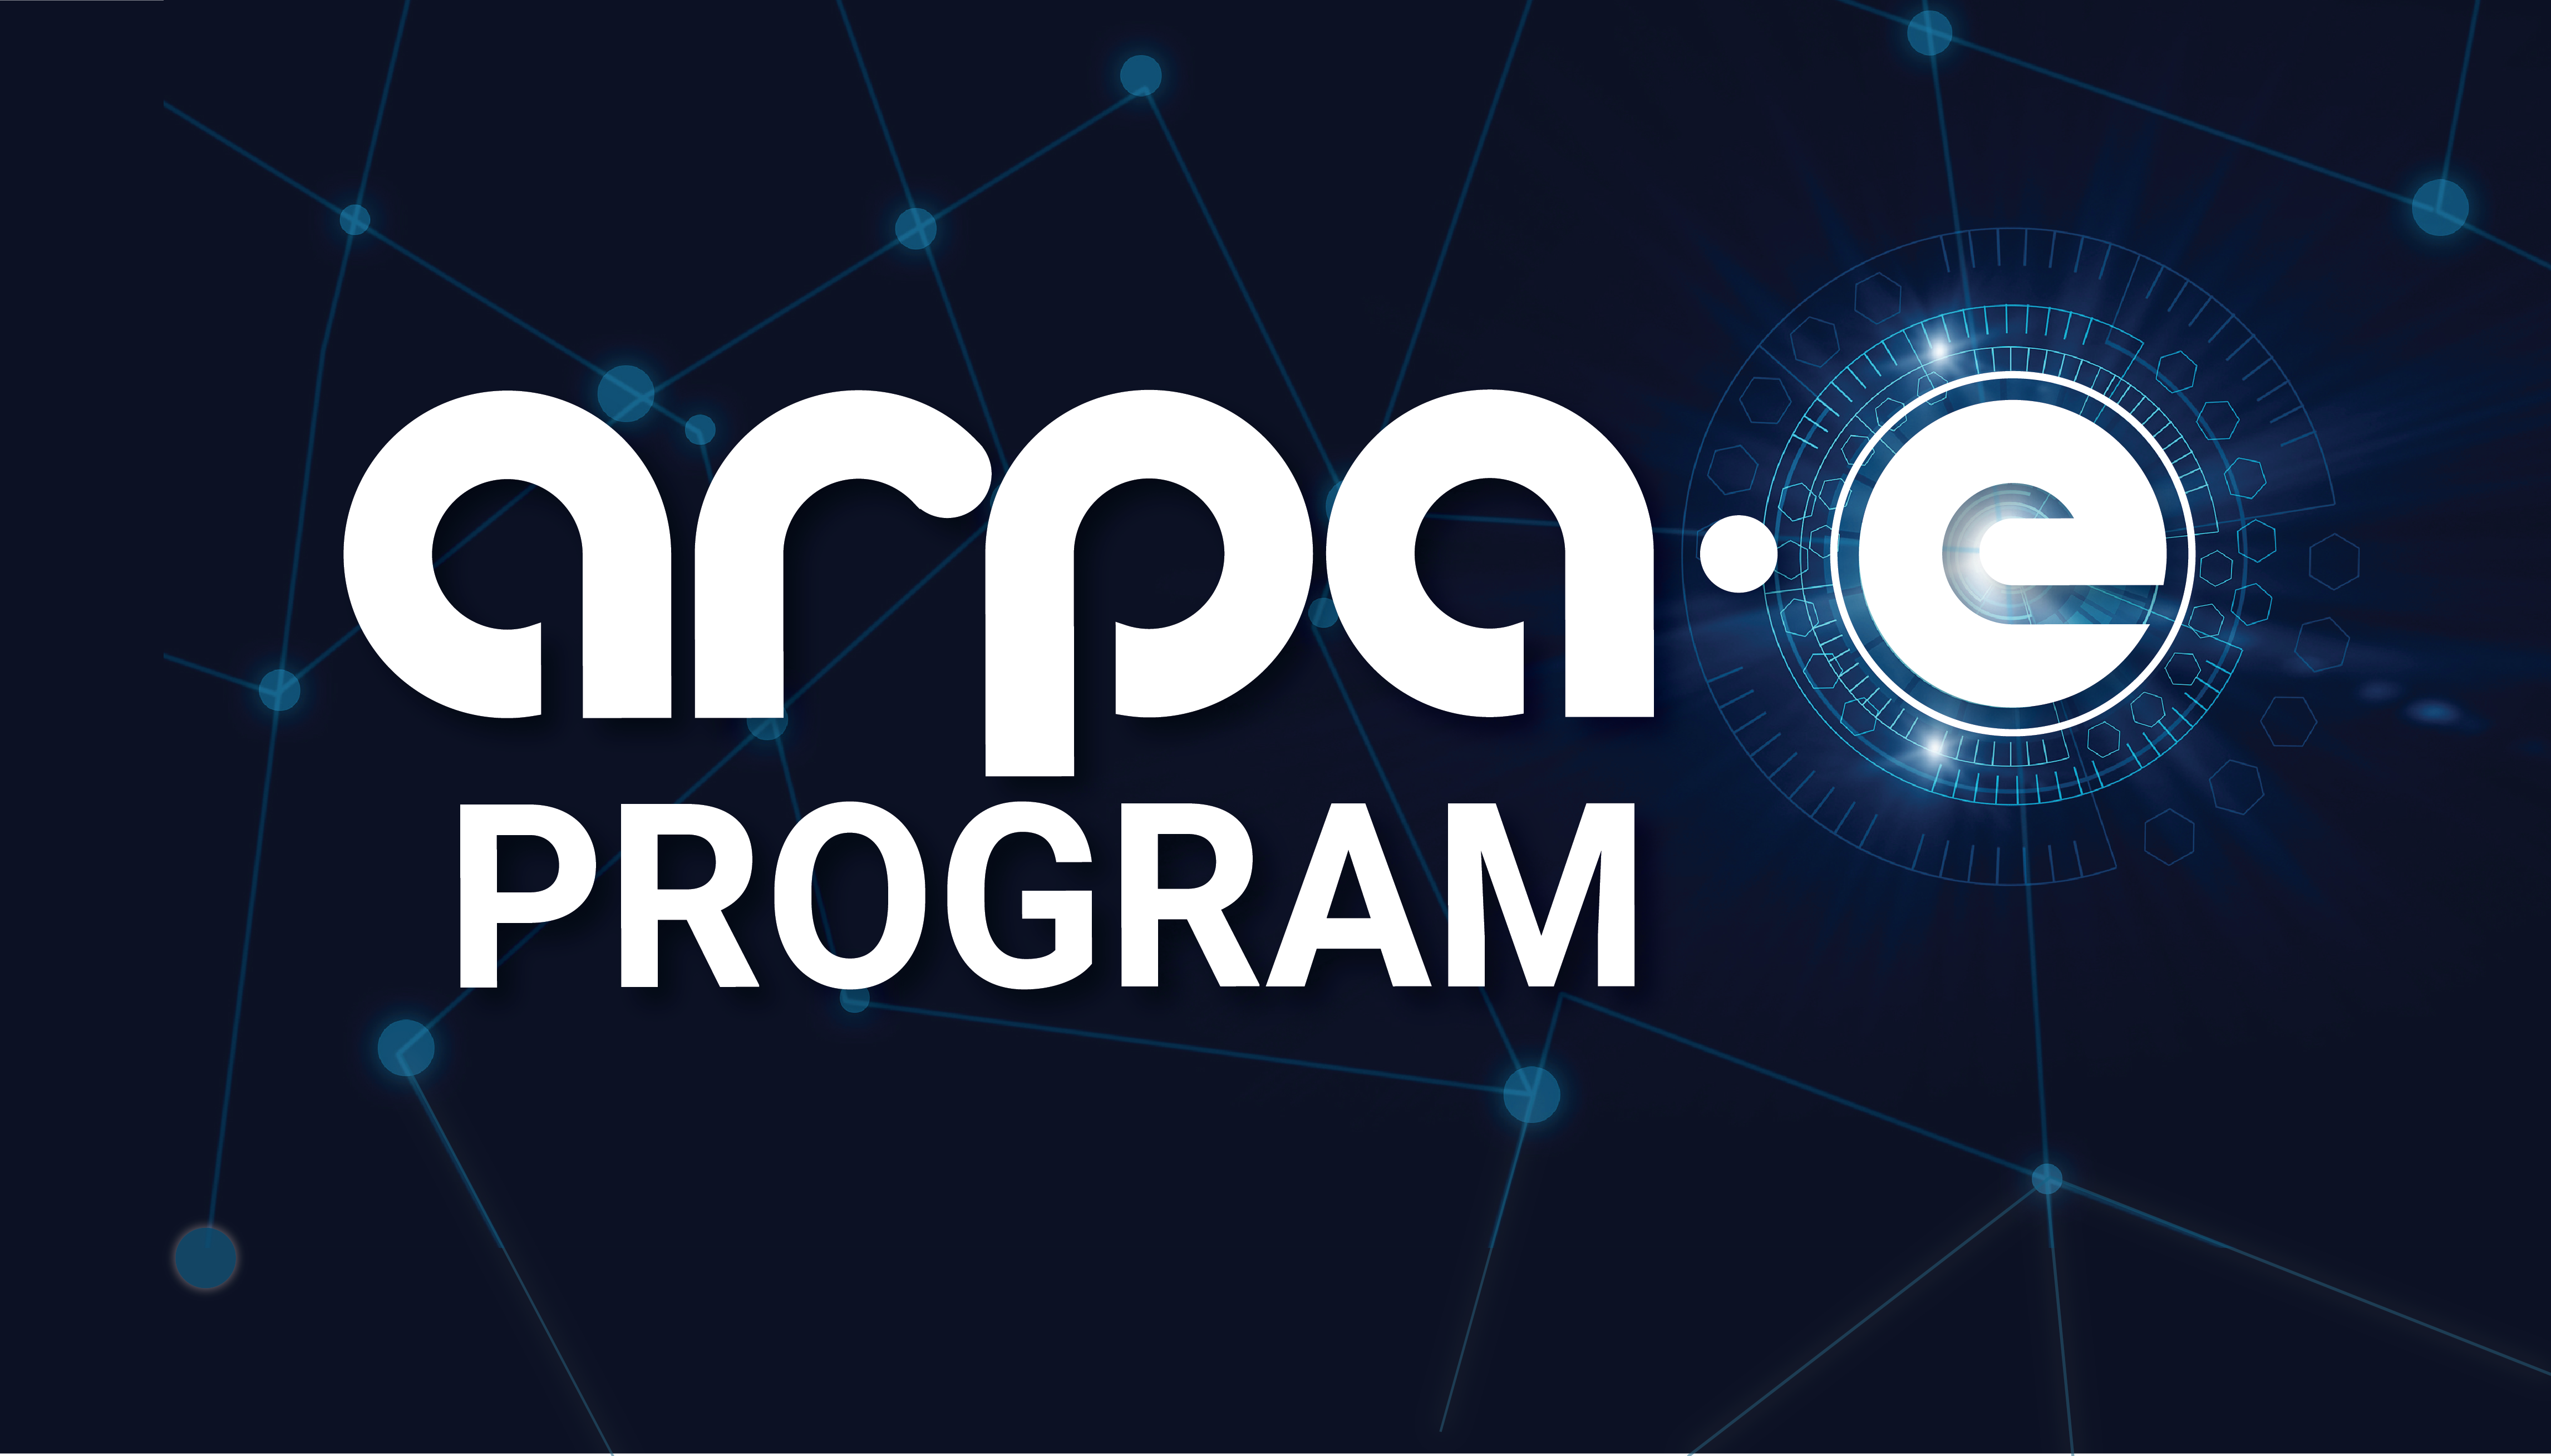 ARPA-E Program Graphic